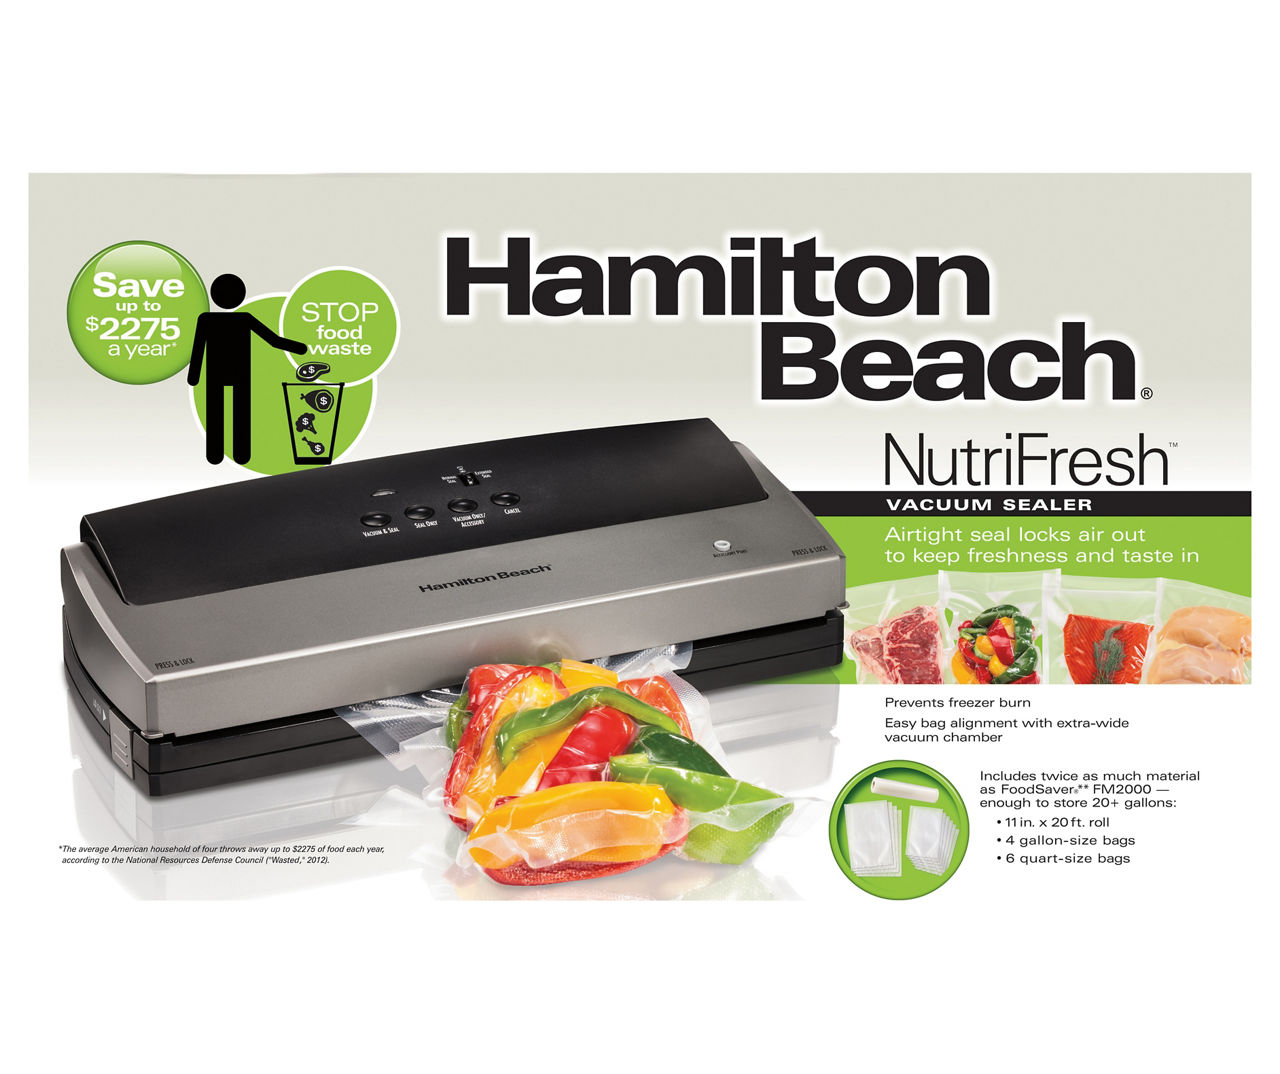 Hamilton Beach NutriFresh Quart Heat Seal Bags, 30 Count - 20124328